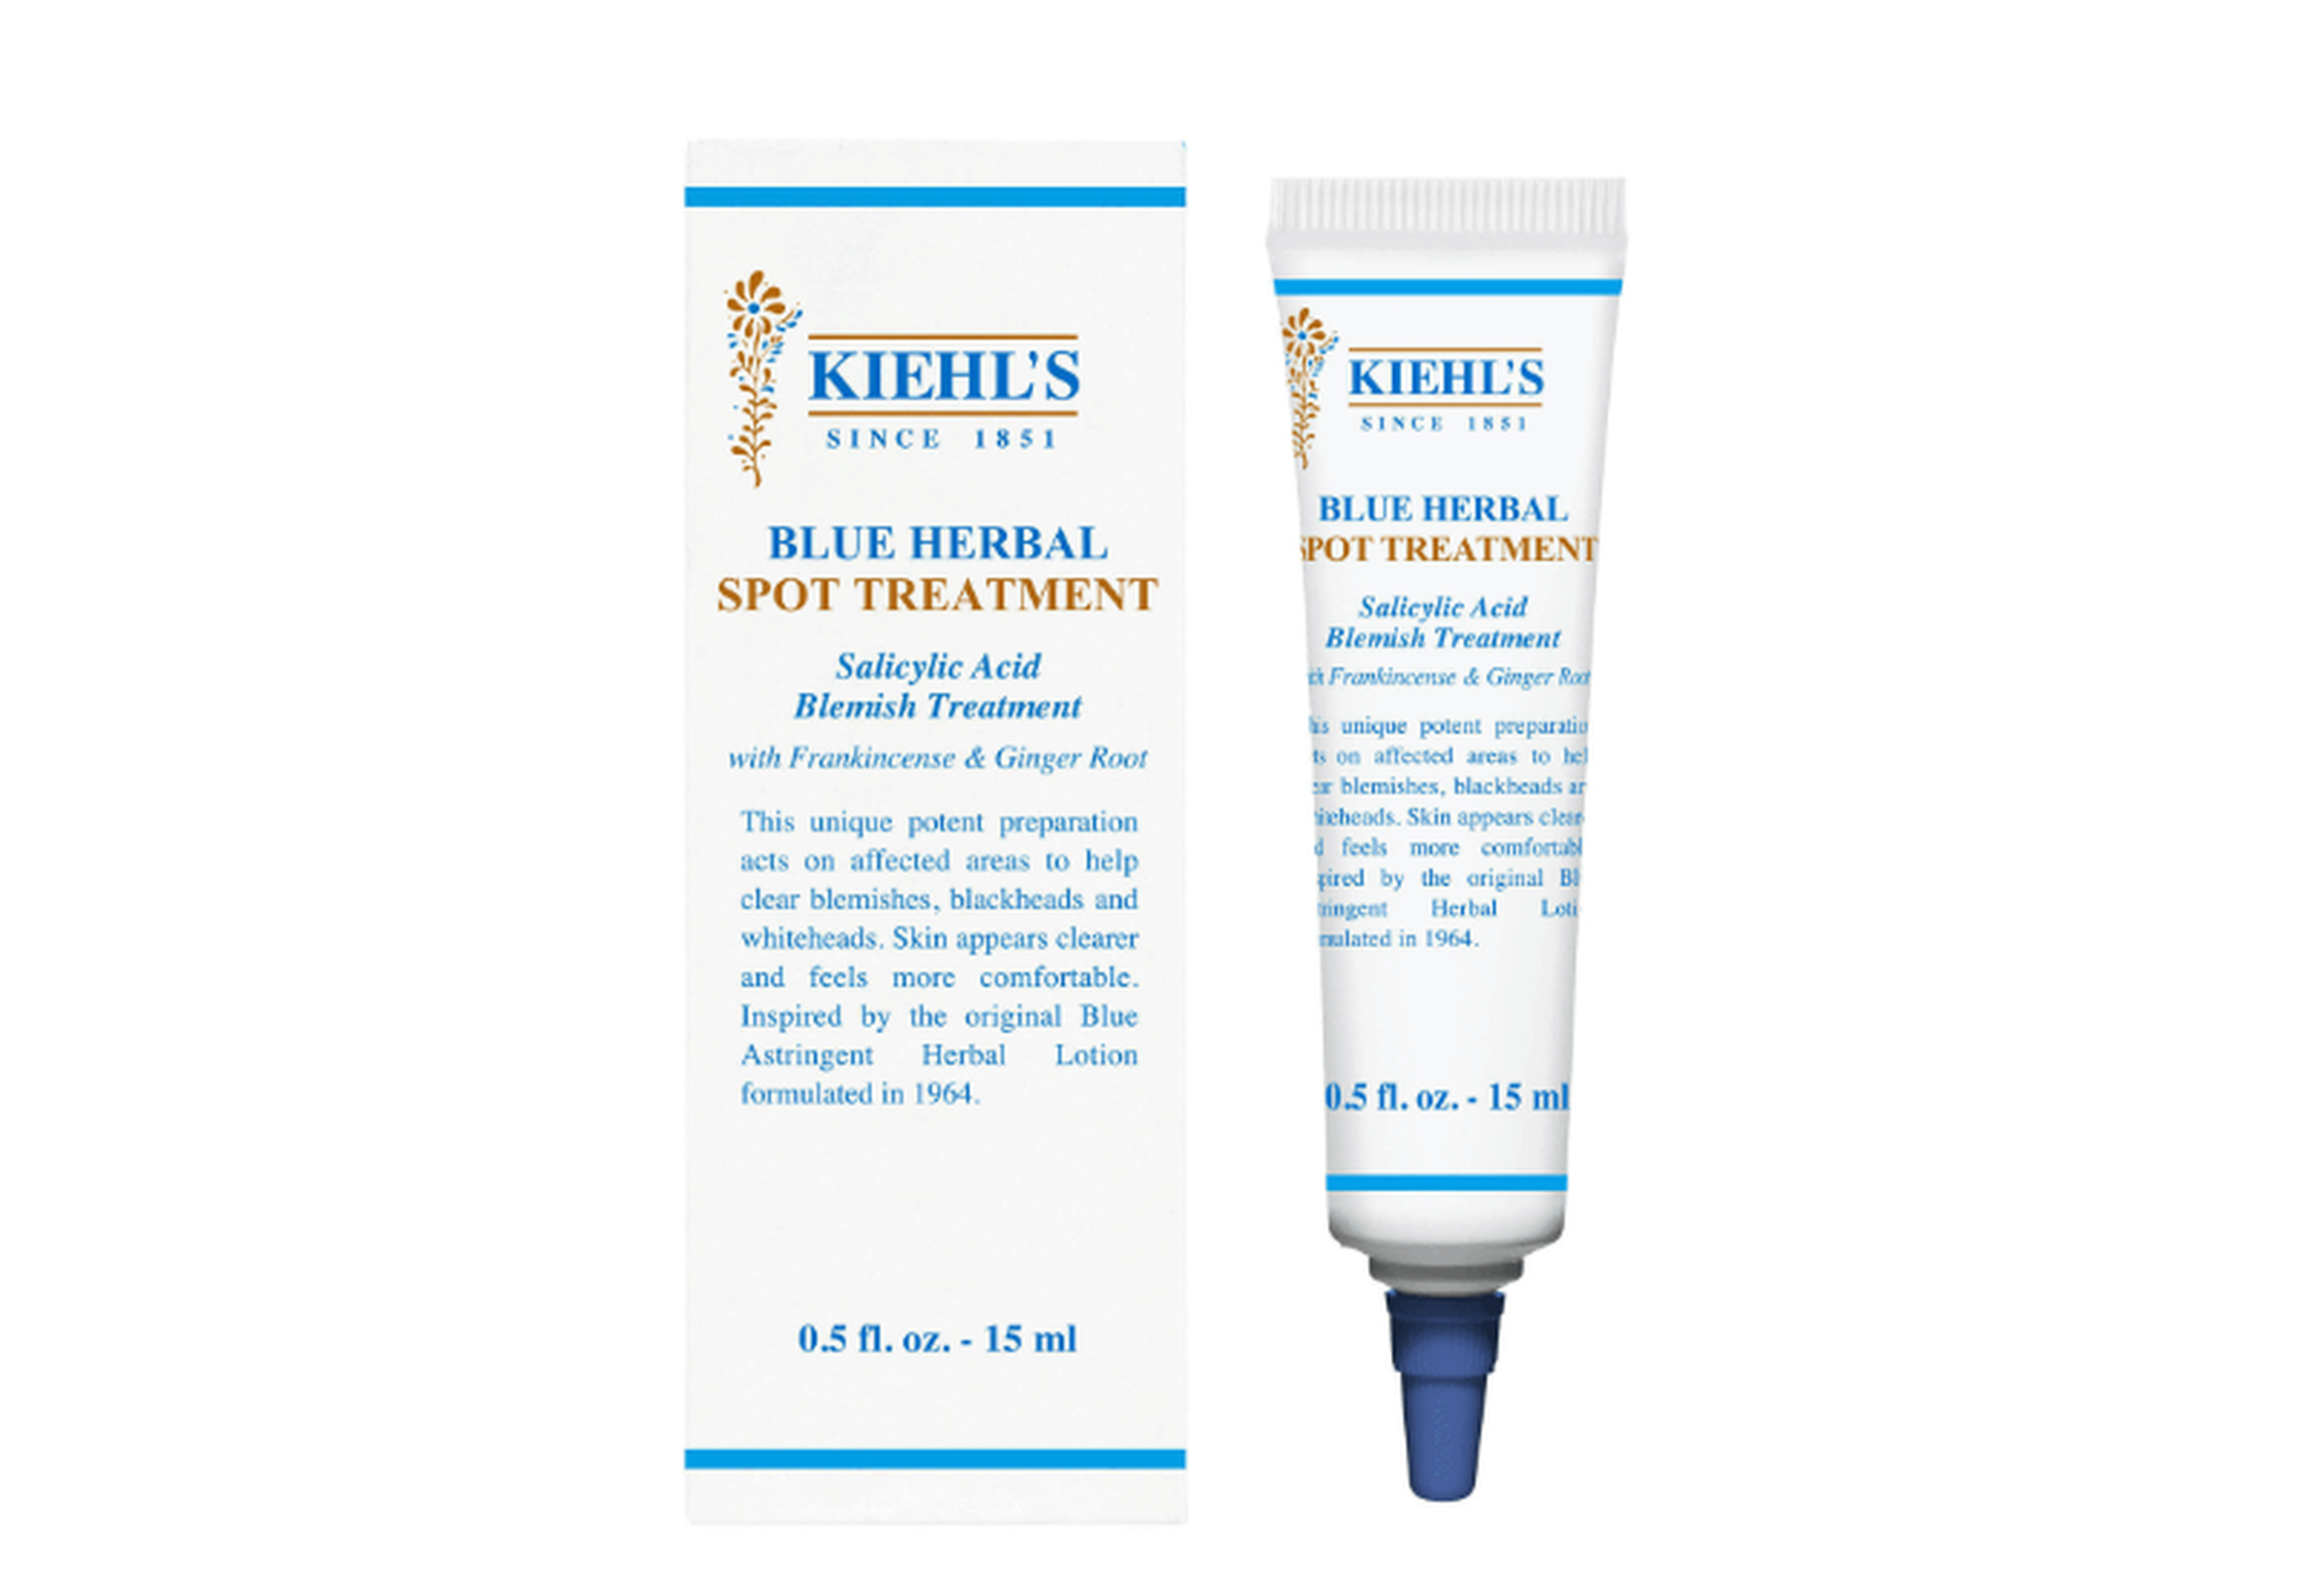 Blue Herbal Spot Treatment de Kiehls.